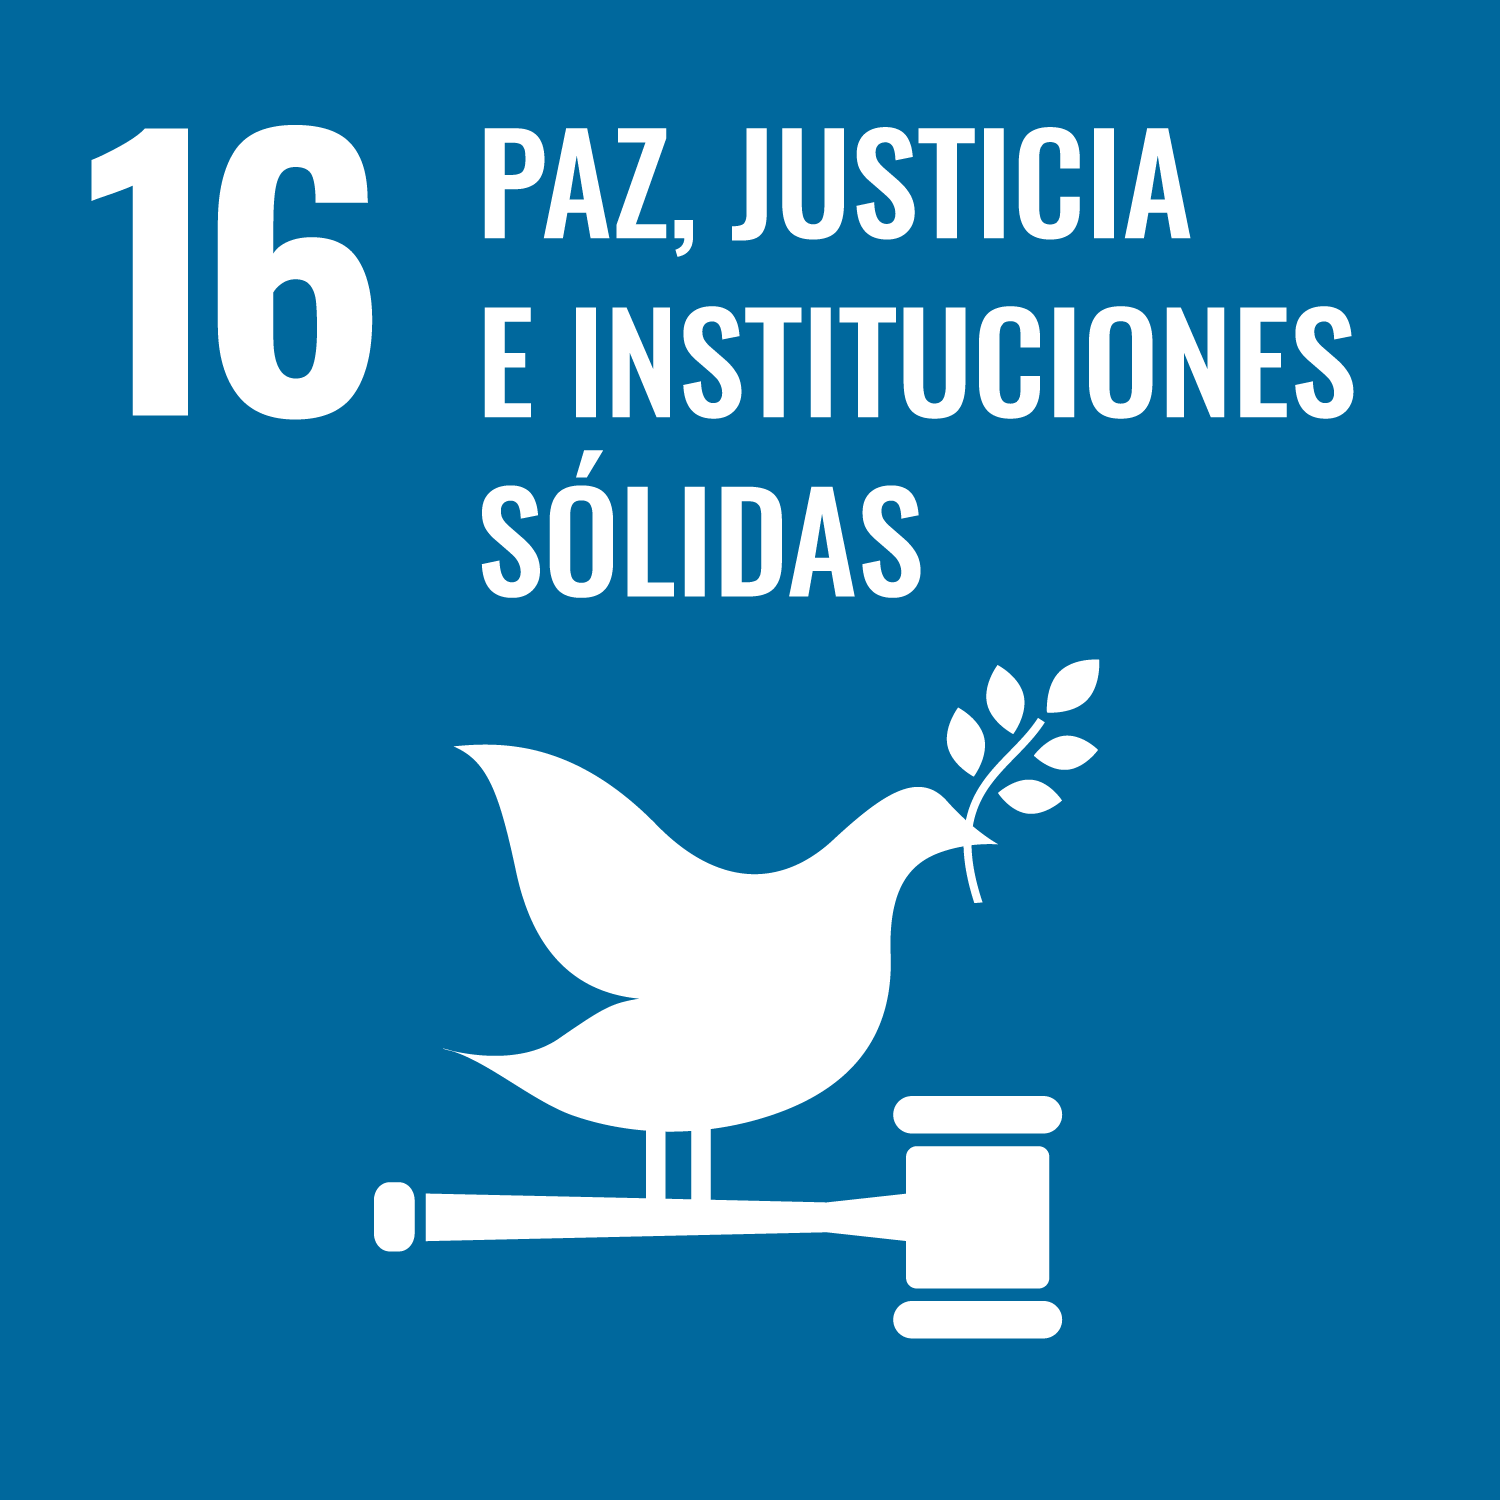 16. Promover sociedades pacíficas e inclusivas para el desarrollo sostenible.